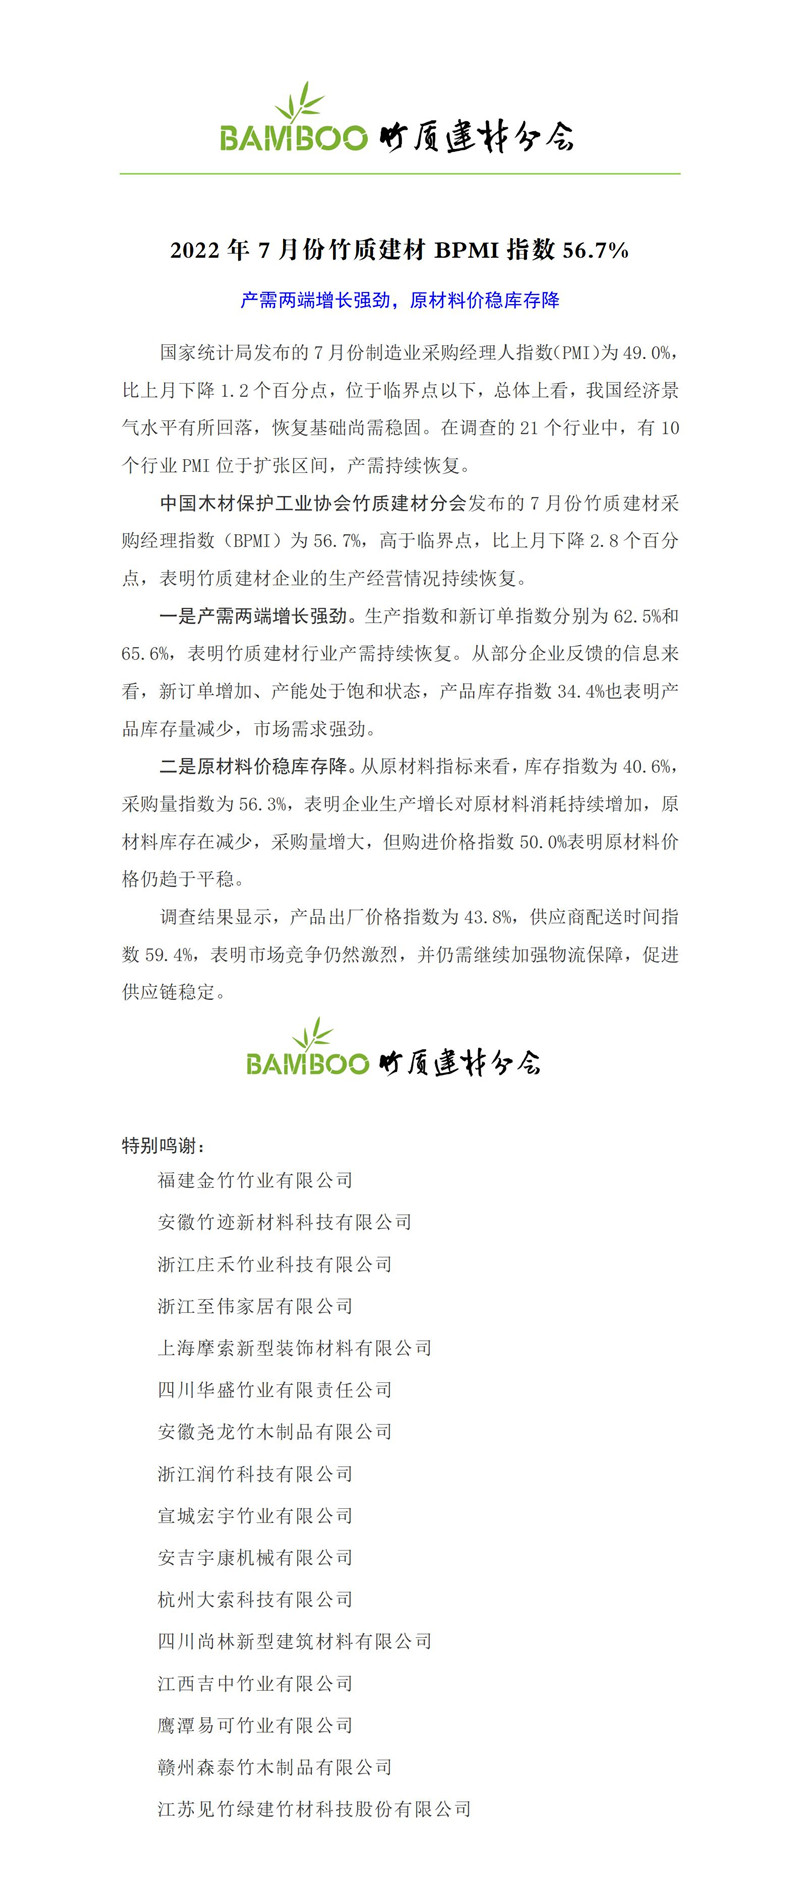 2022年7月竹材行業采購經理人指數-發布_01.jpg